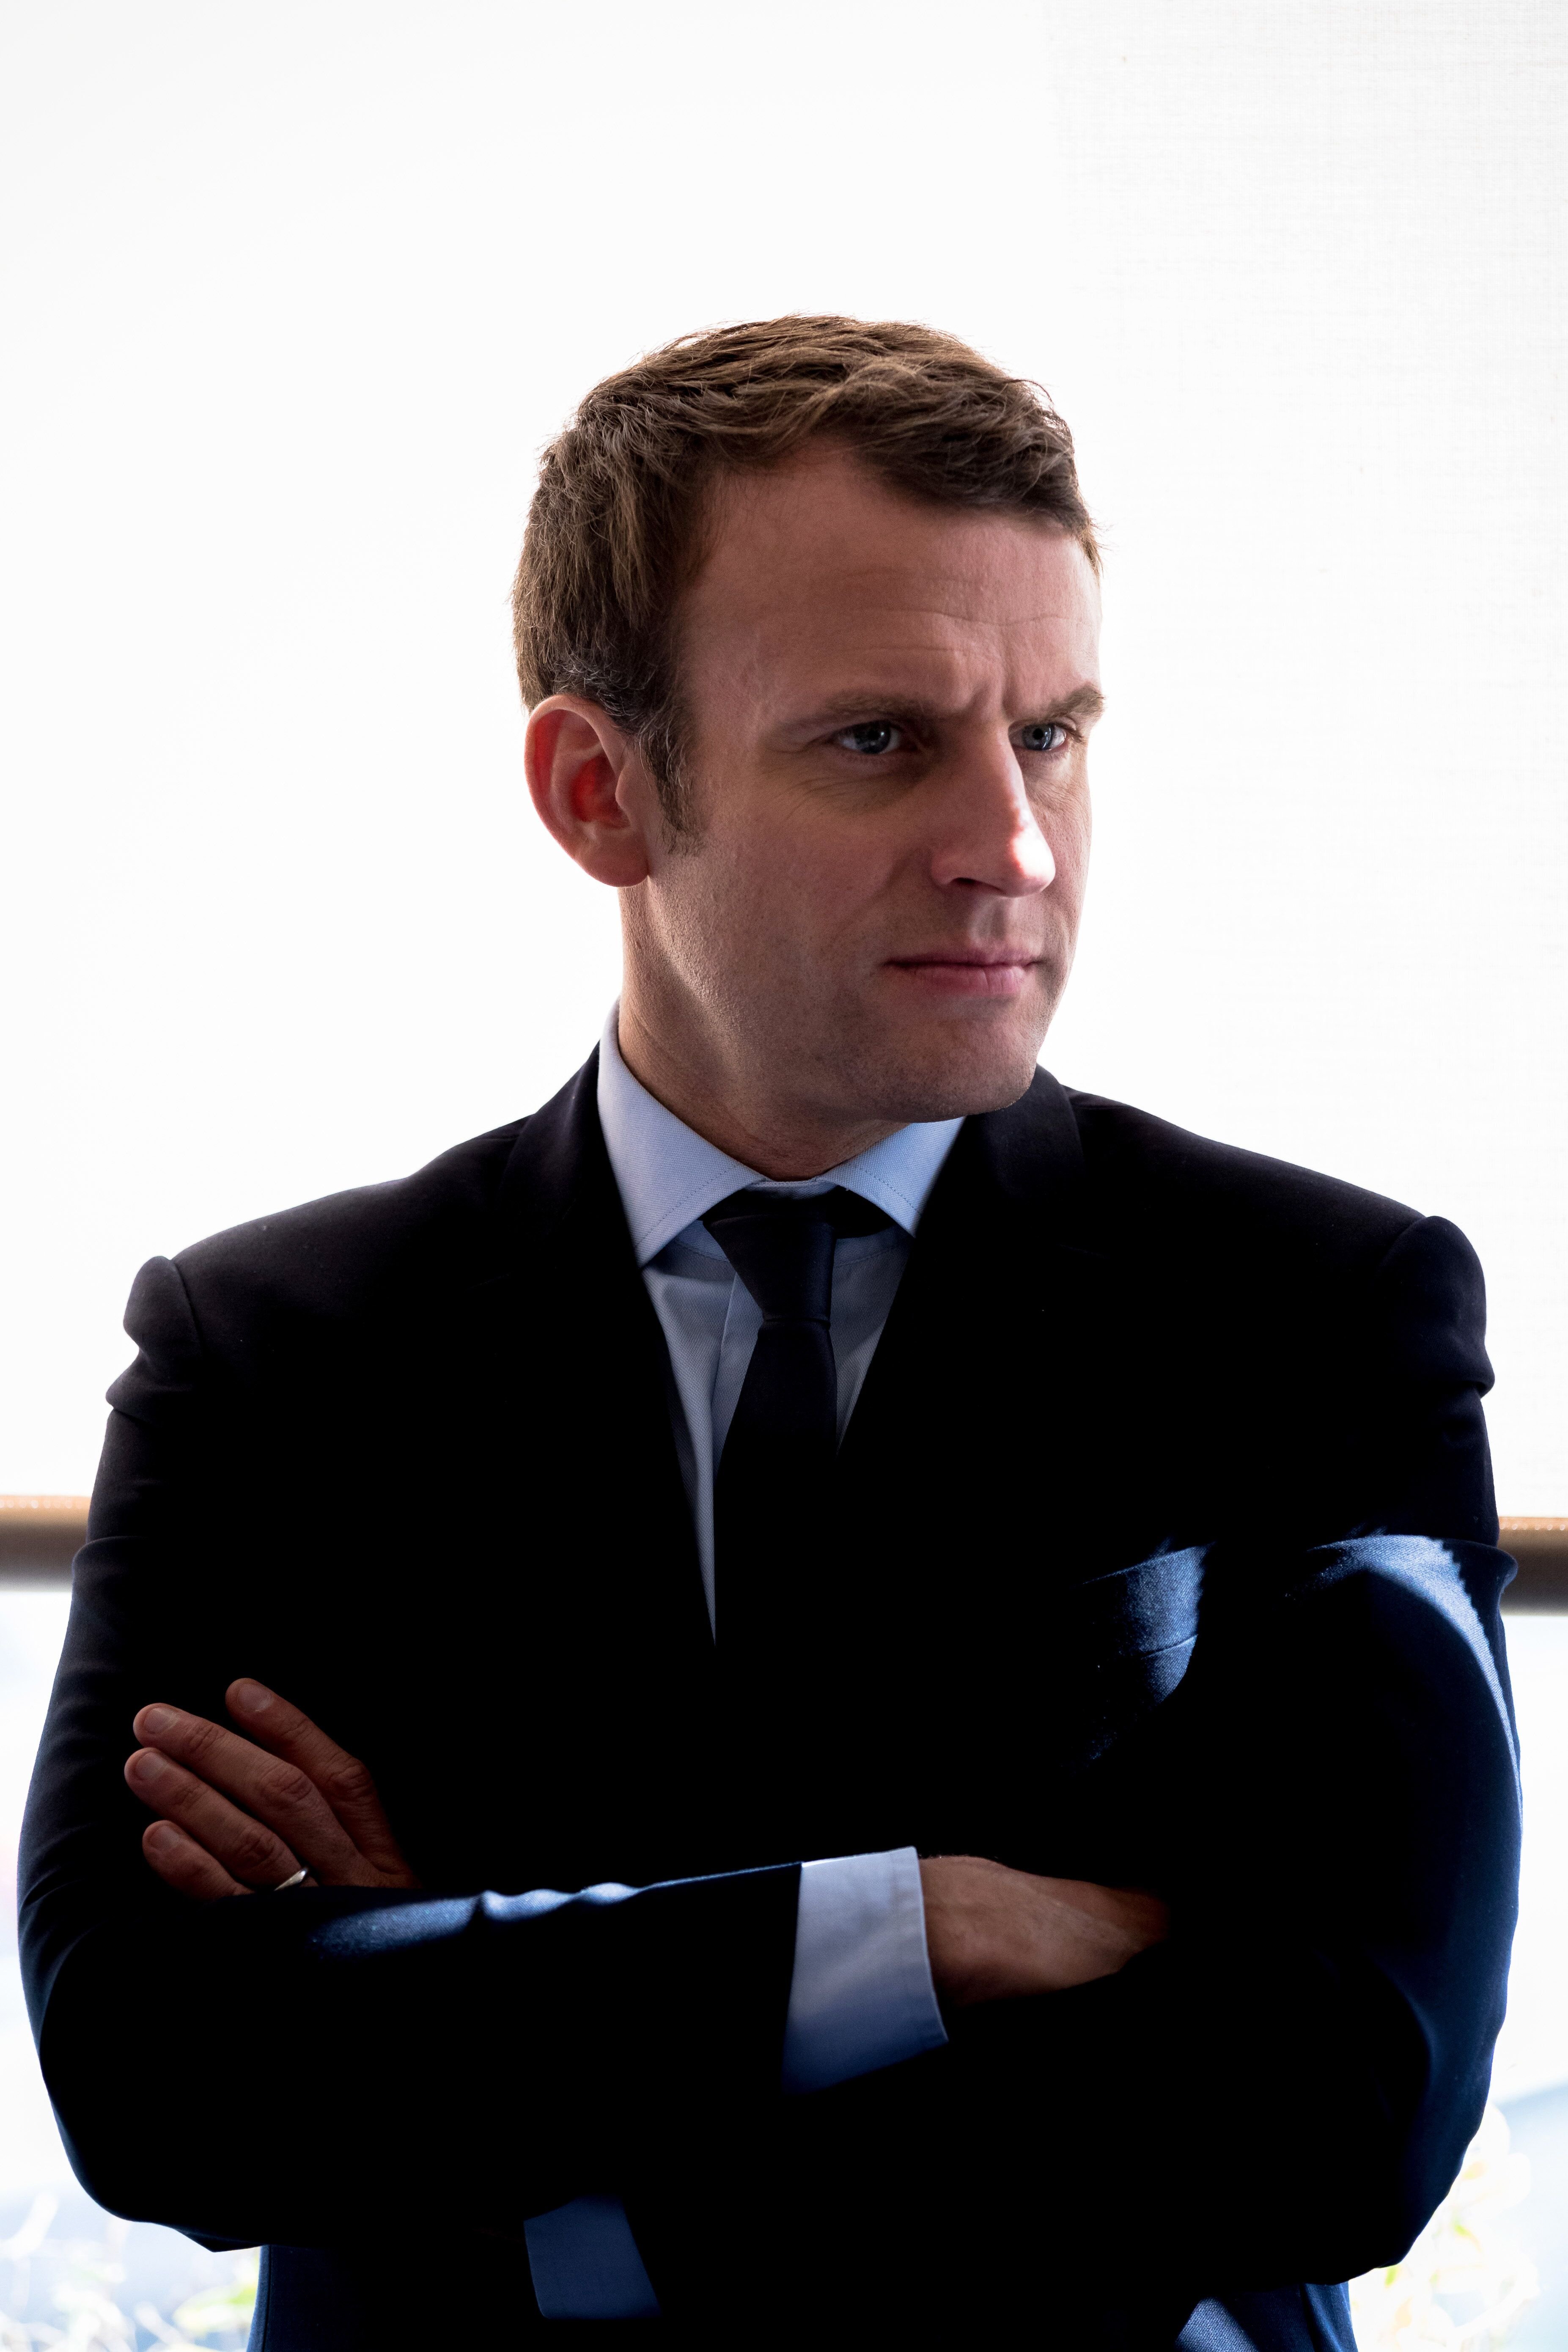 Le président français Emmanuel Macron | Photo : Getty Images